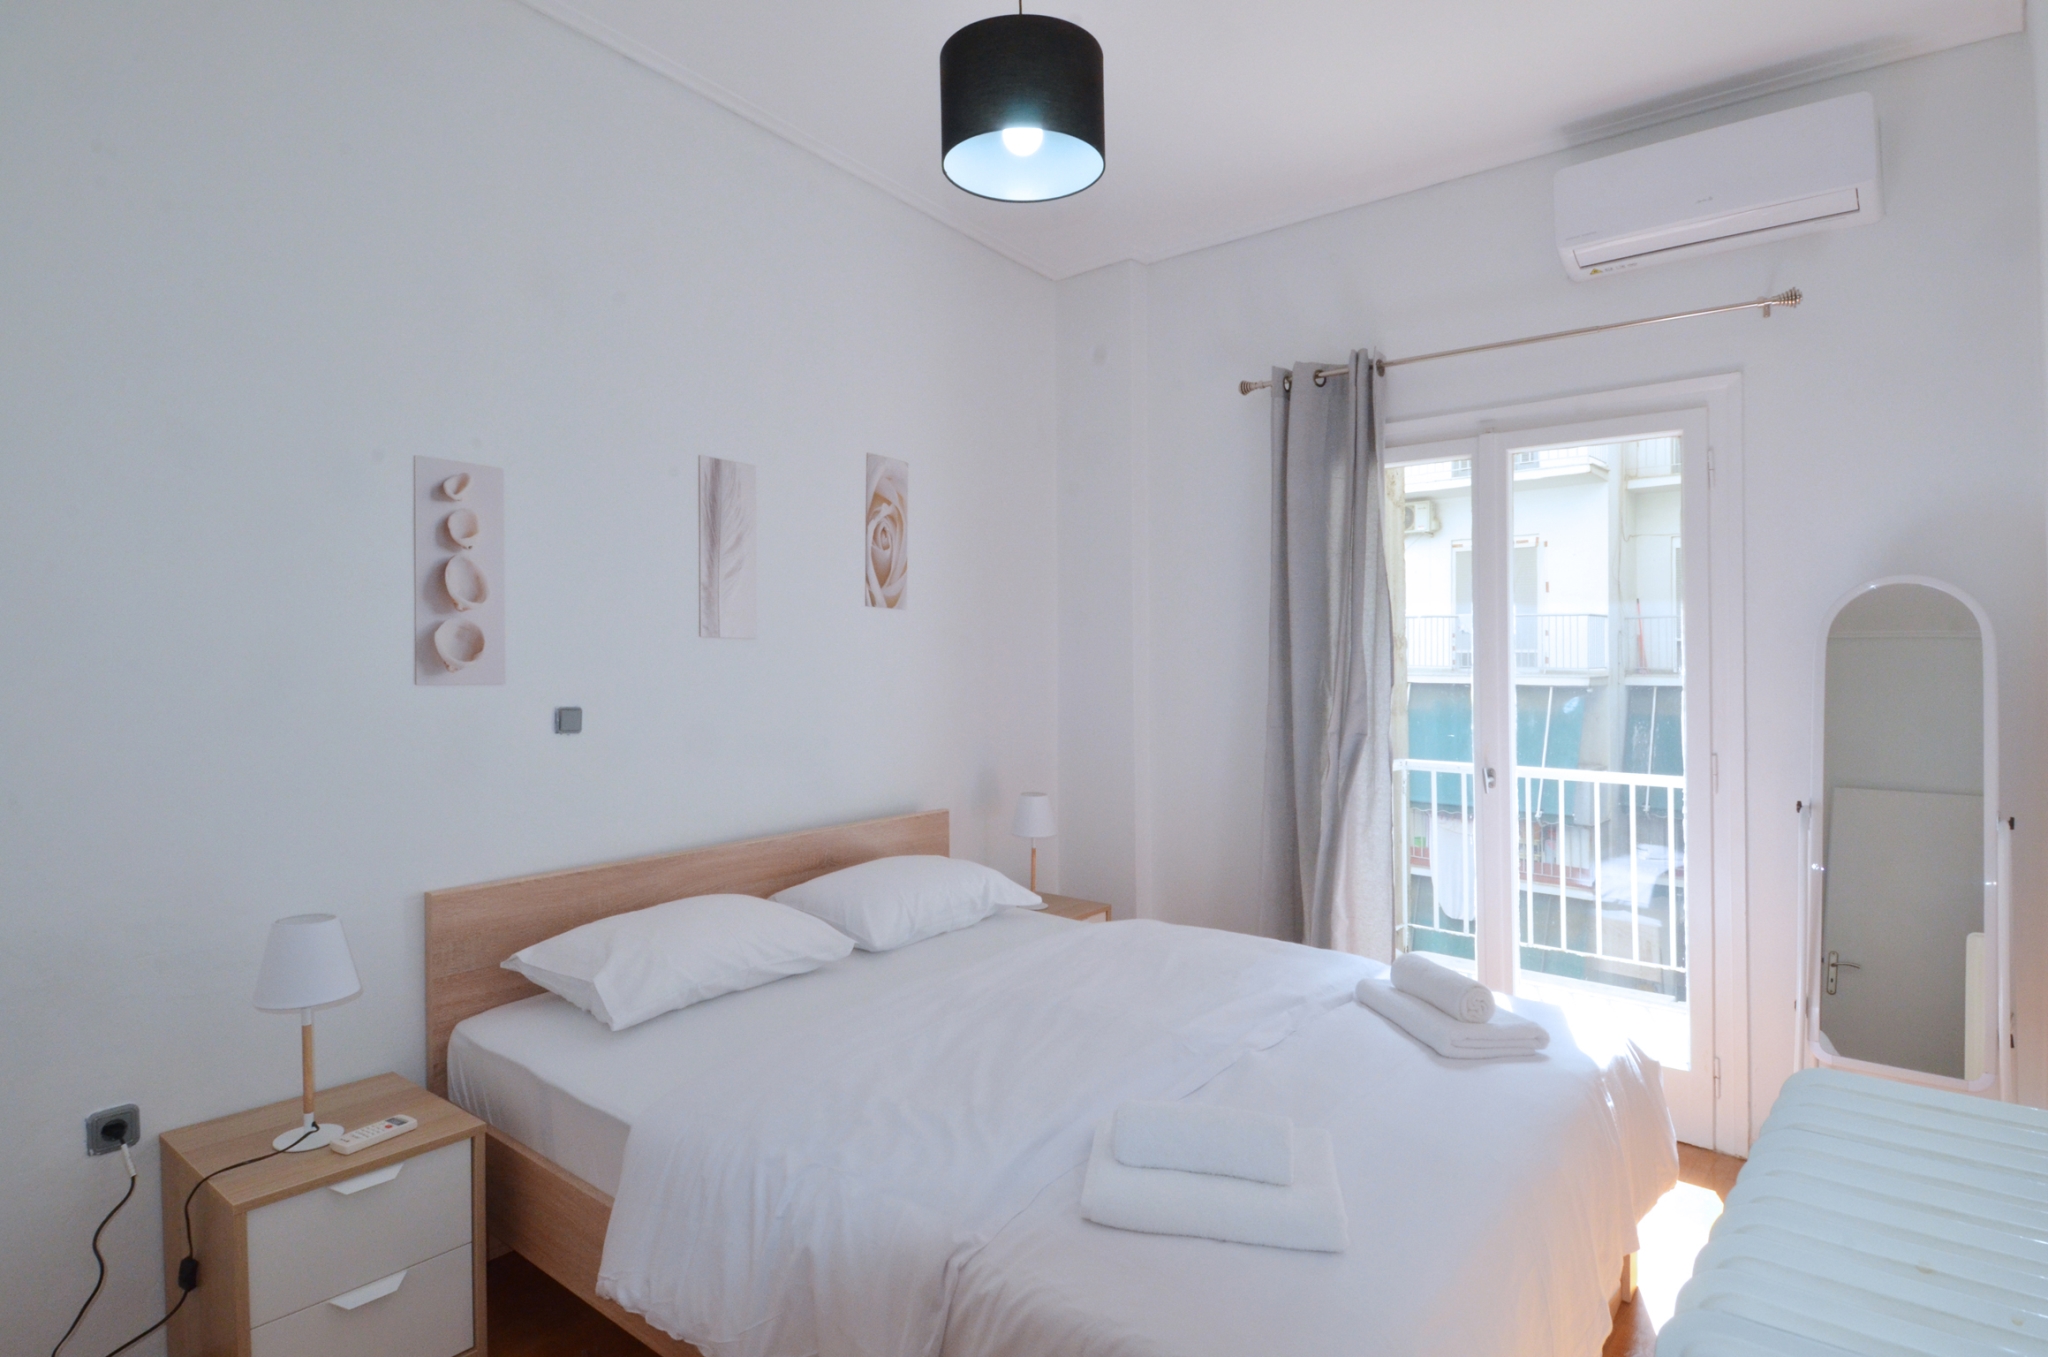 A cozy minimal apartment at Koukaki, Dimitrakopoulou